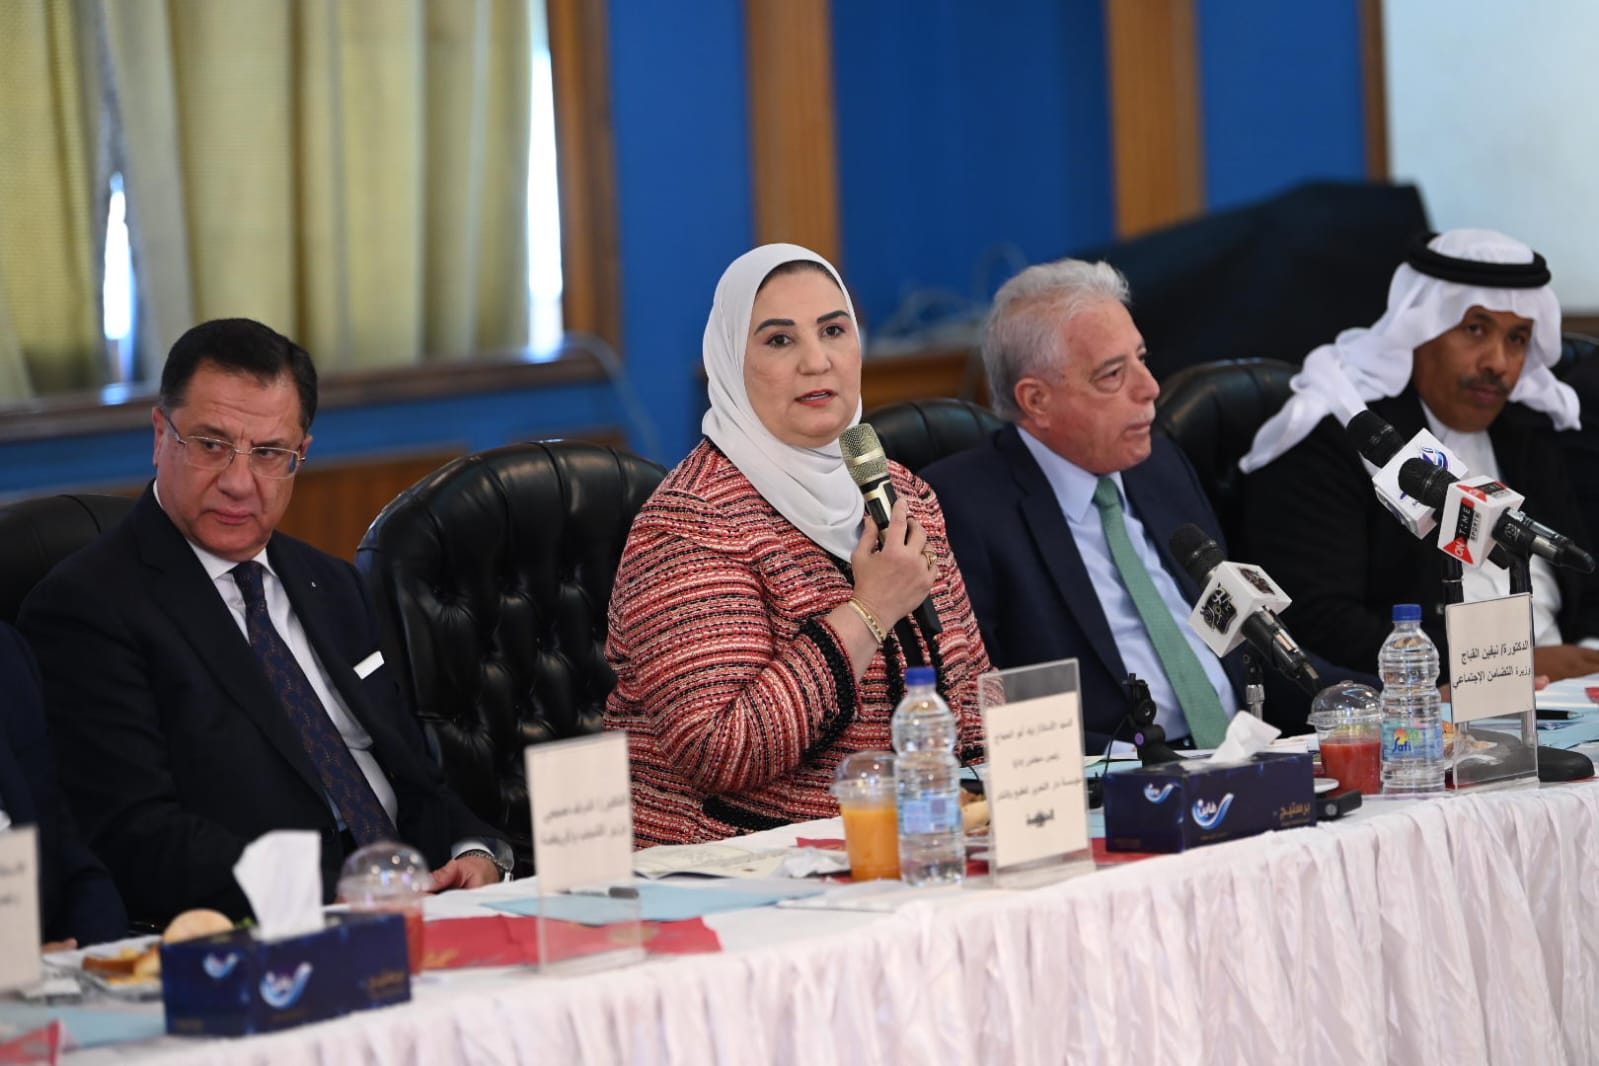 وزيرة التضامن الاجتماعي تشارك في فعاليات الاجتماع العام للمهرجان المصري الإماراتي الثاني للهجن والتراث